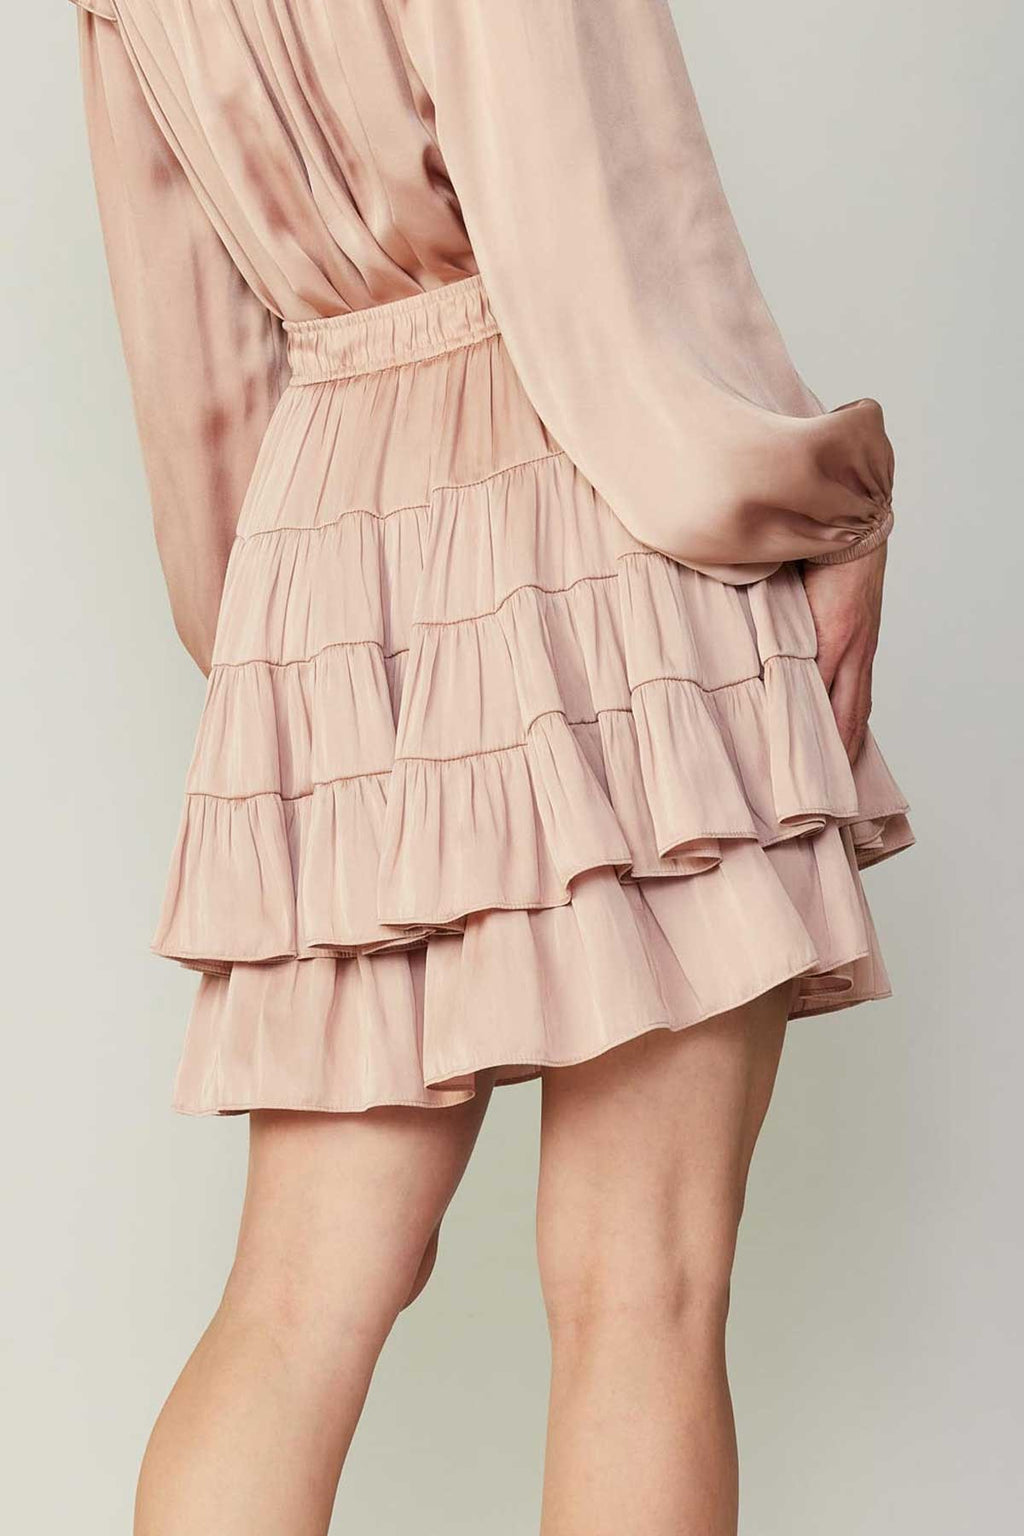 Tiered Mini Skirt- Faded Blush